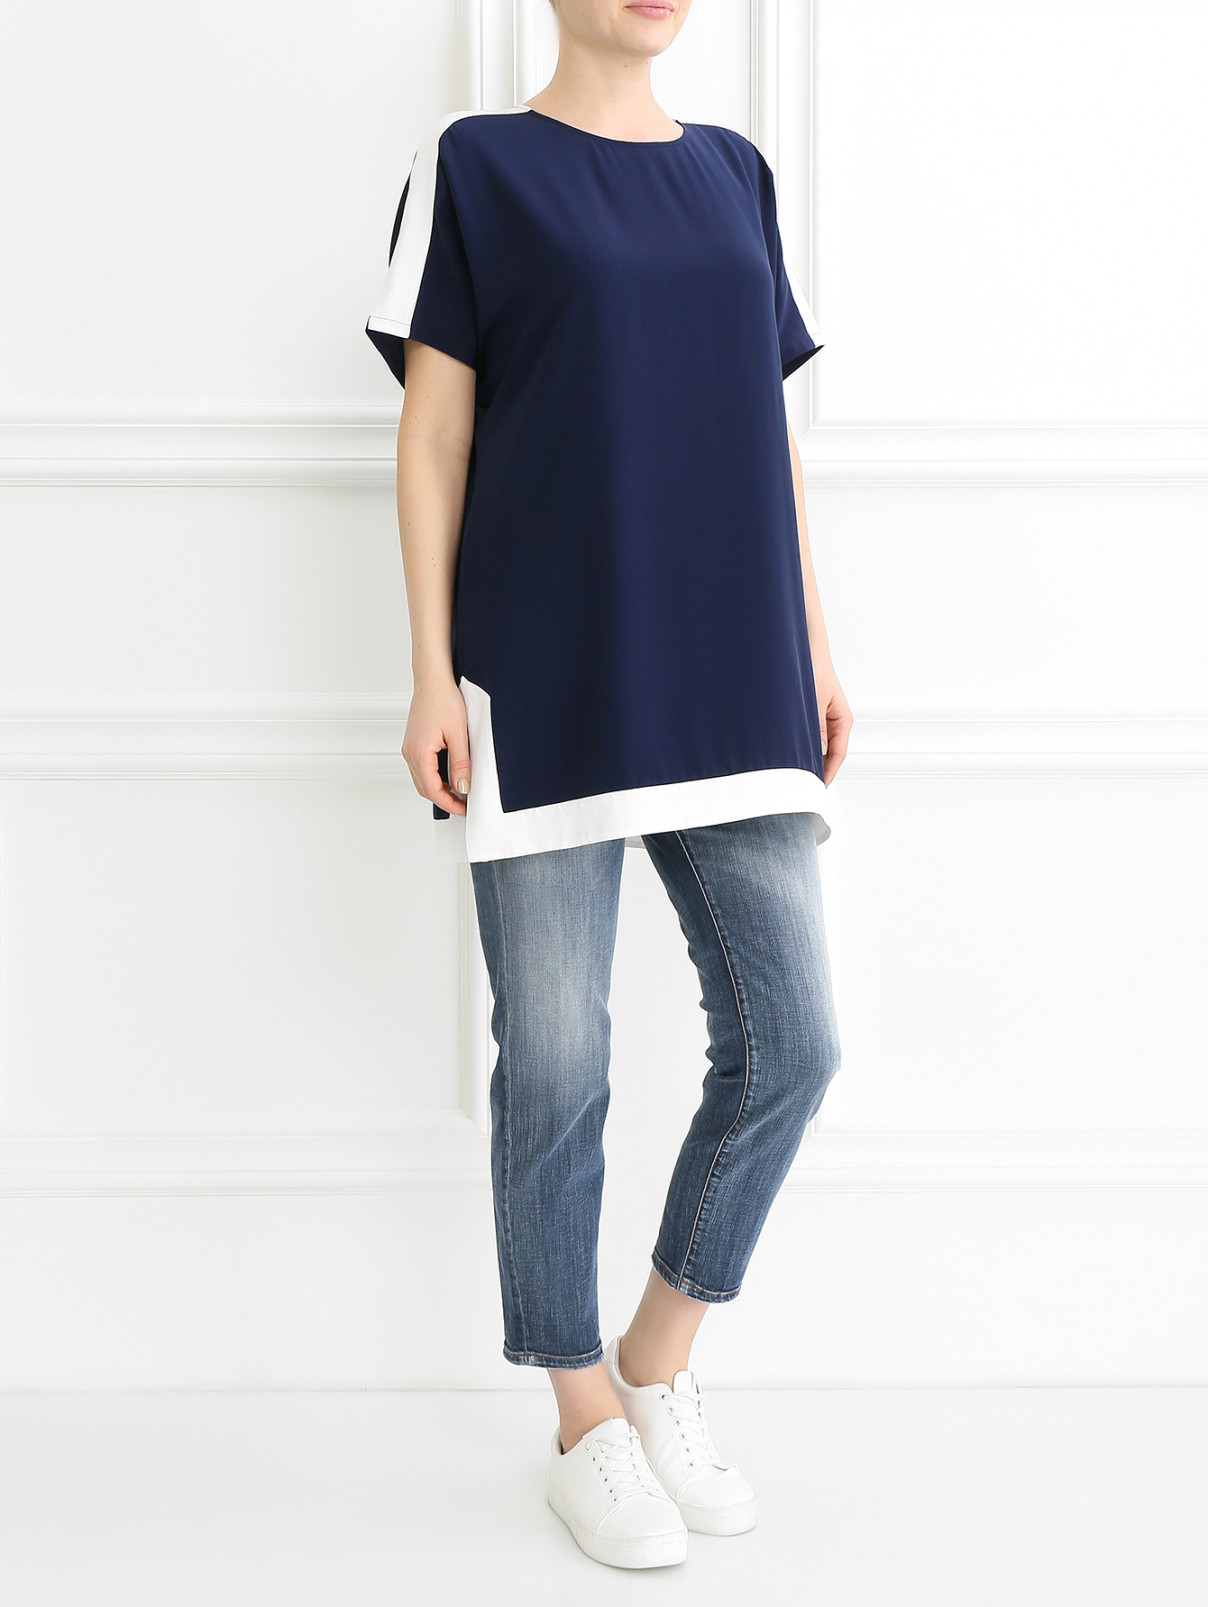 Блуза из шелка свободного кроя Tory Burch  –  Модель Общий вид  – Цвет:  Синий